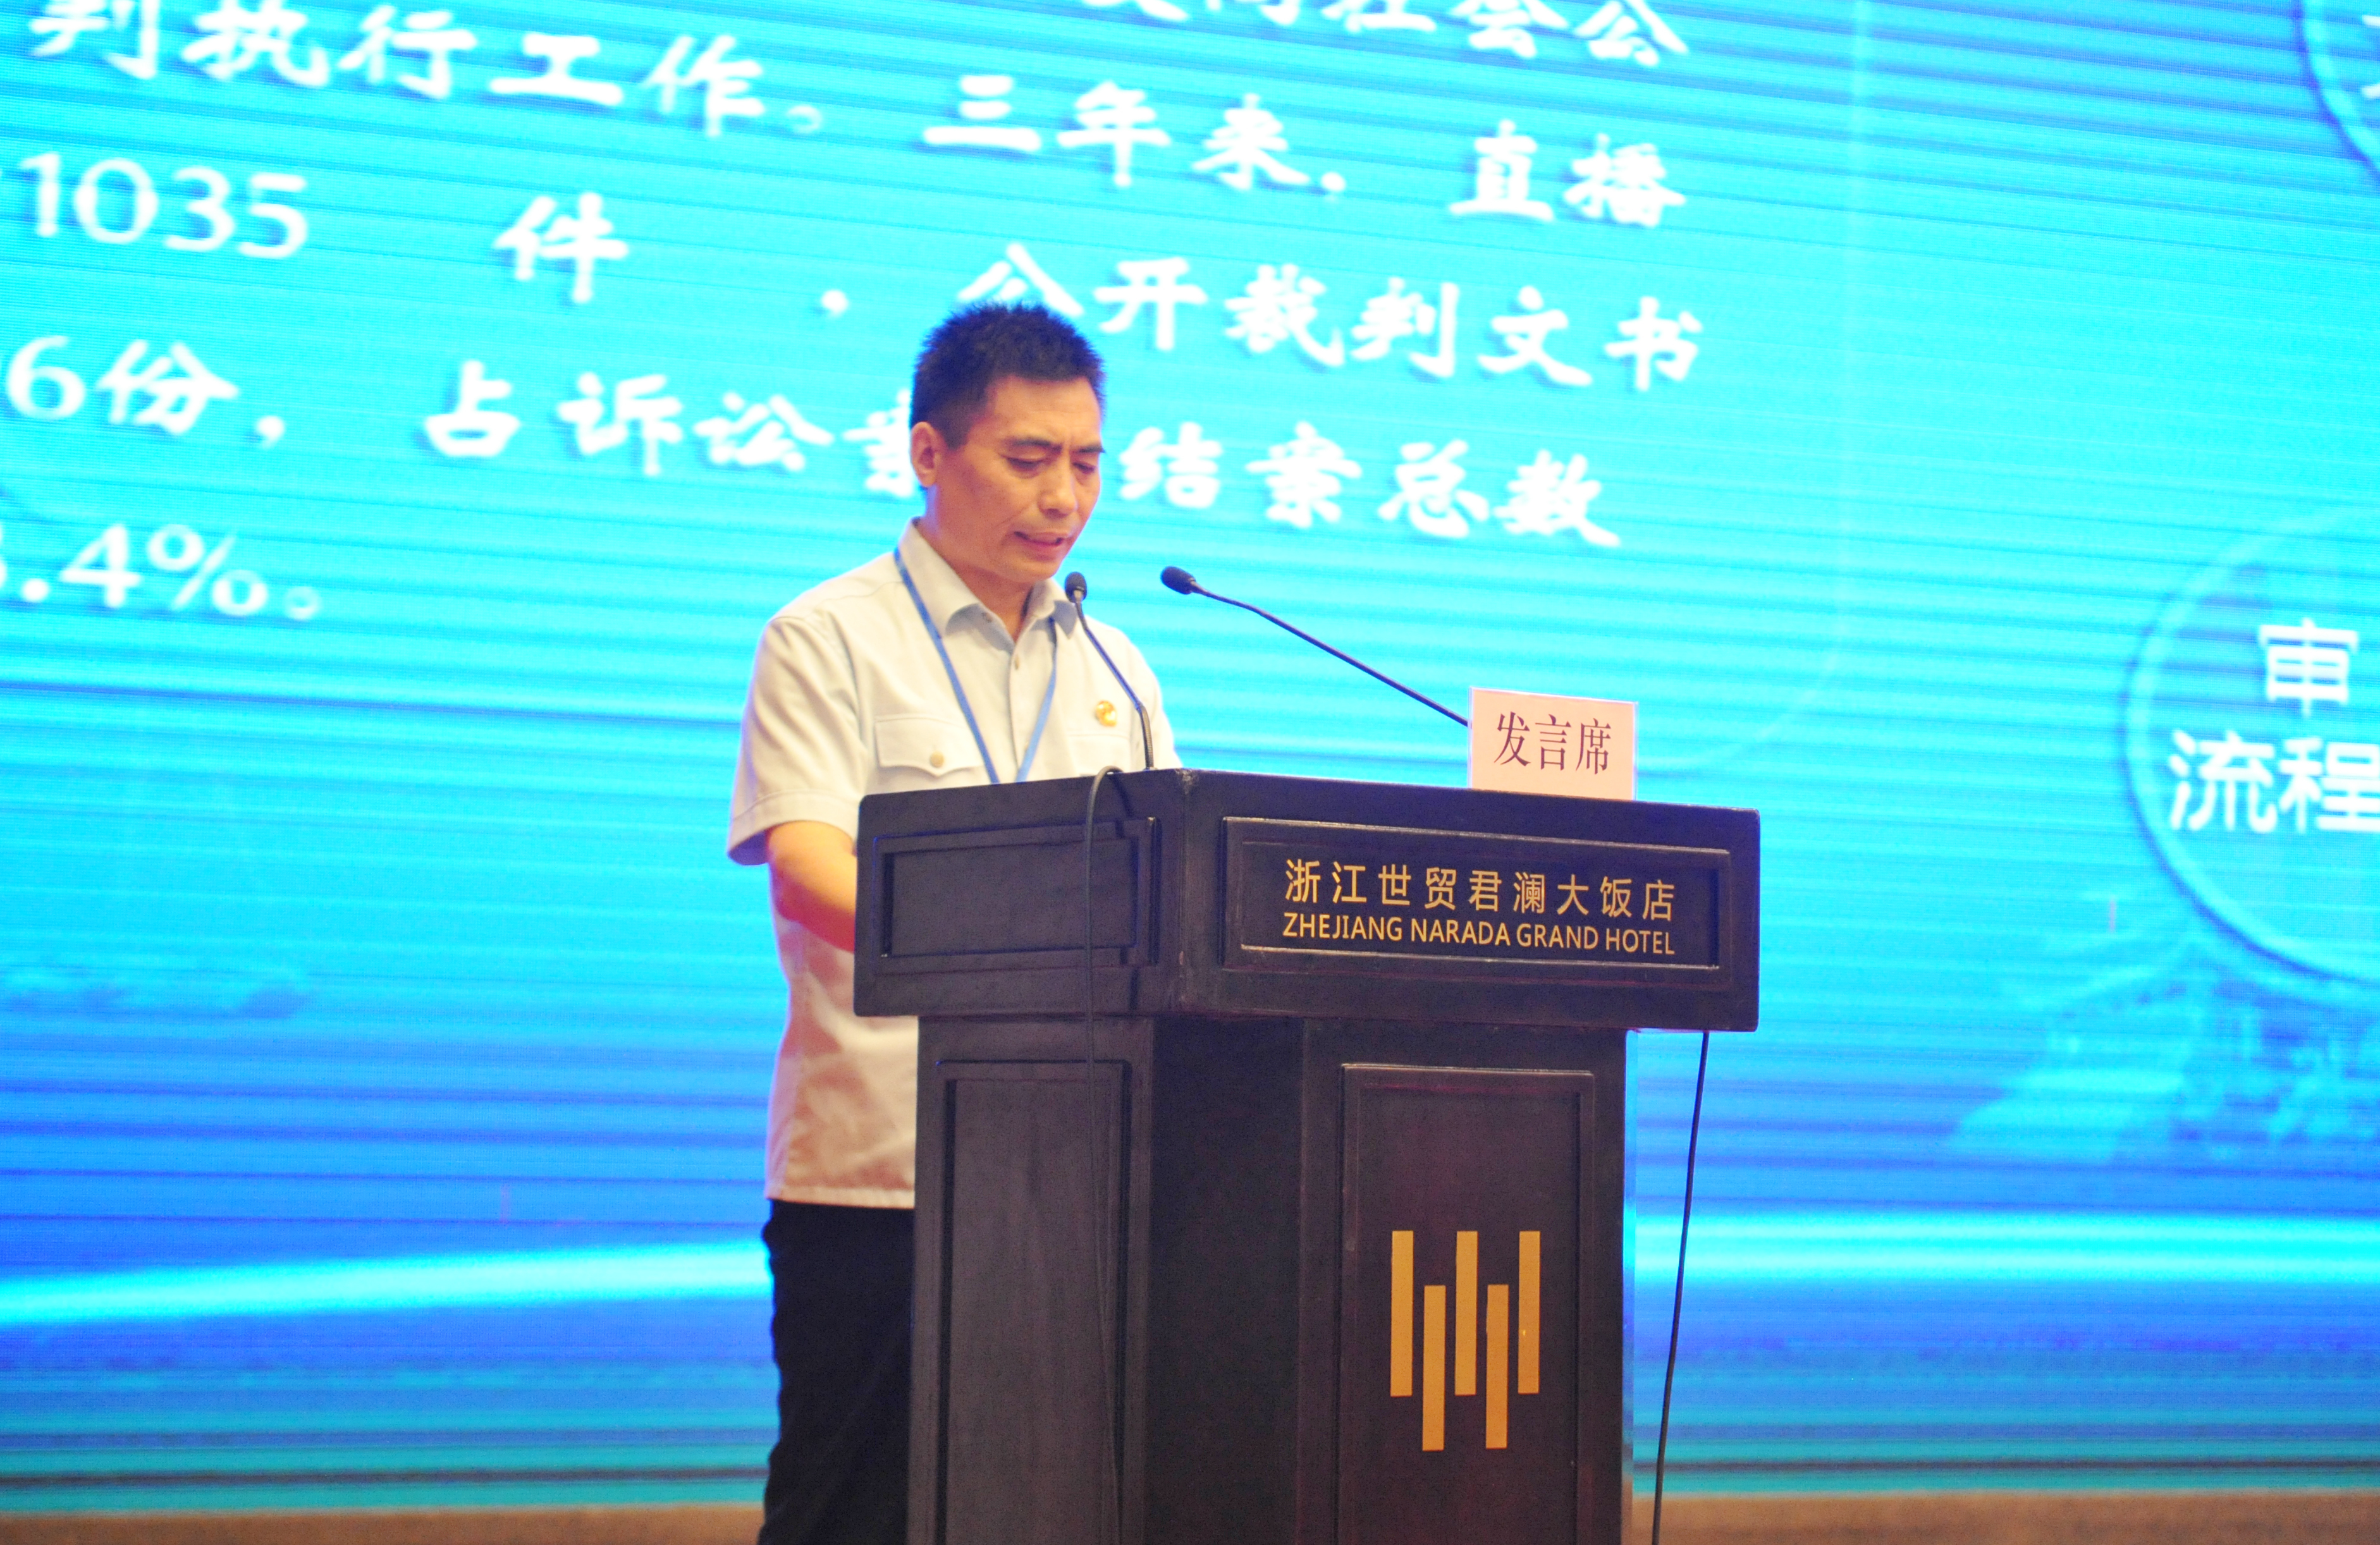 汝州法院院长杨长坡在会上做经验交流发言1 - 复件